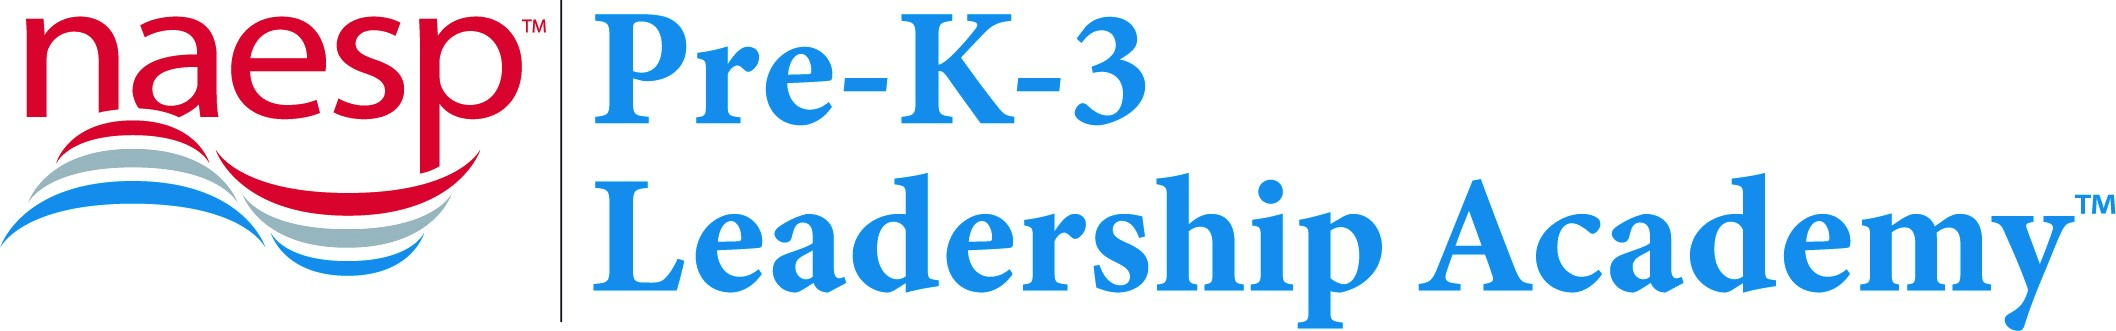 NAESP Pre-K-3 Leadership Academy